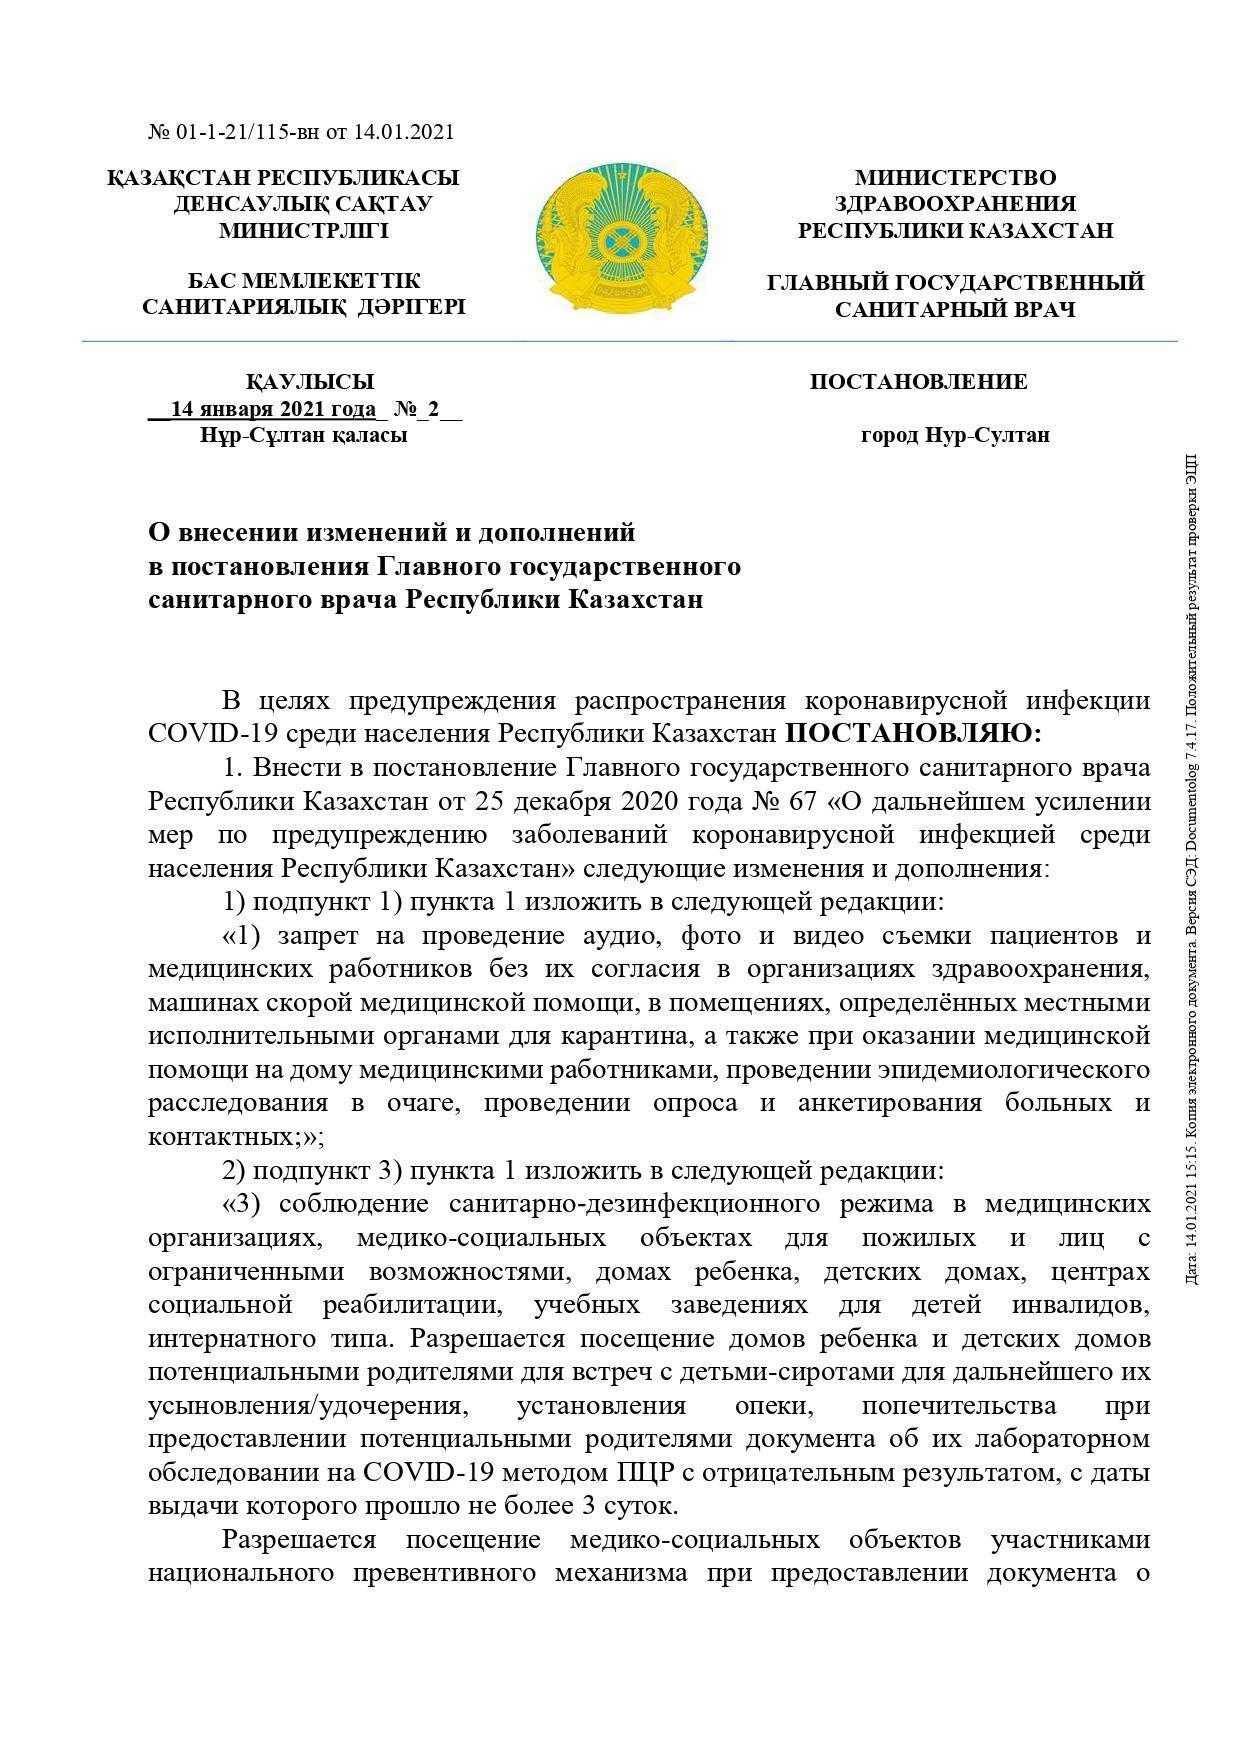 О внесении изменений и дополнений в постановления Главного государственного санитарного врача Республики Казахстан